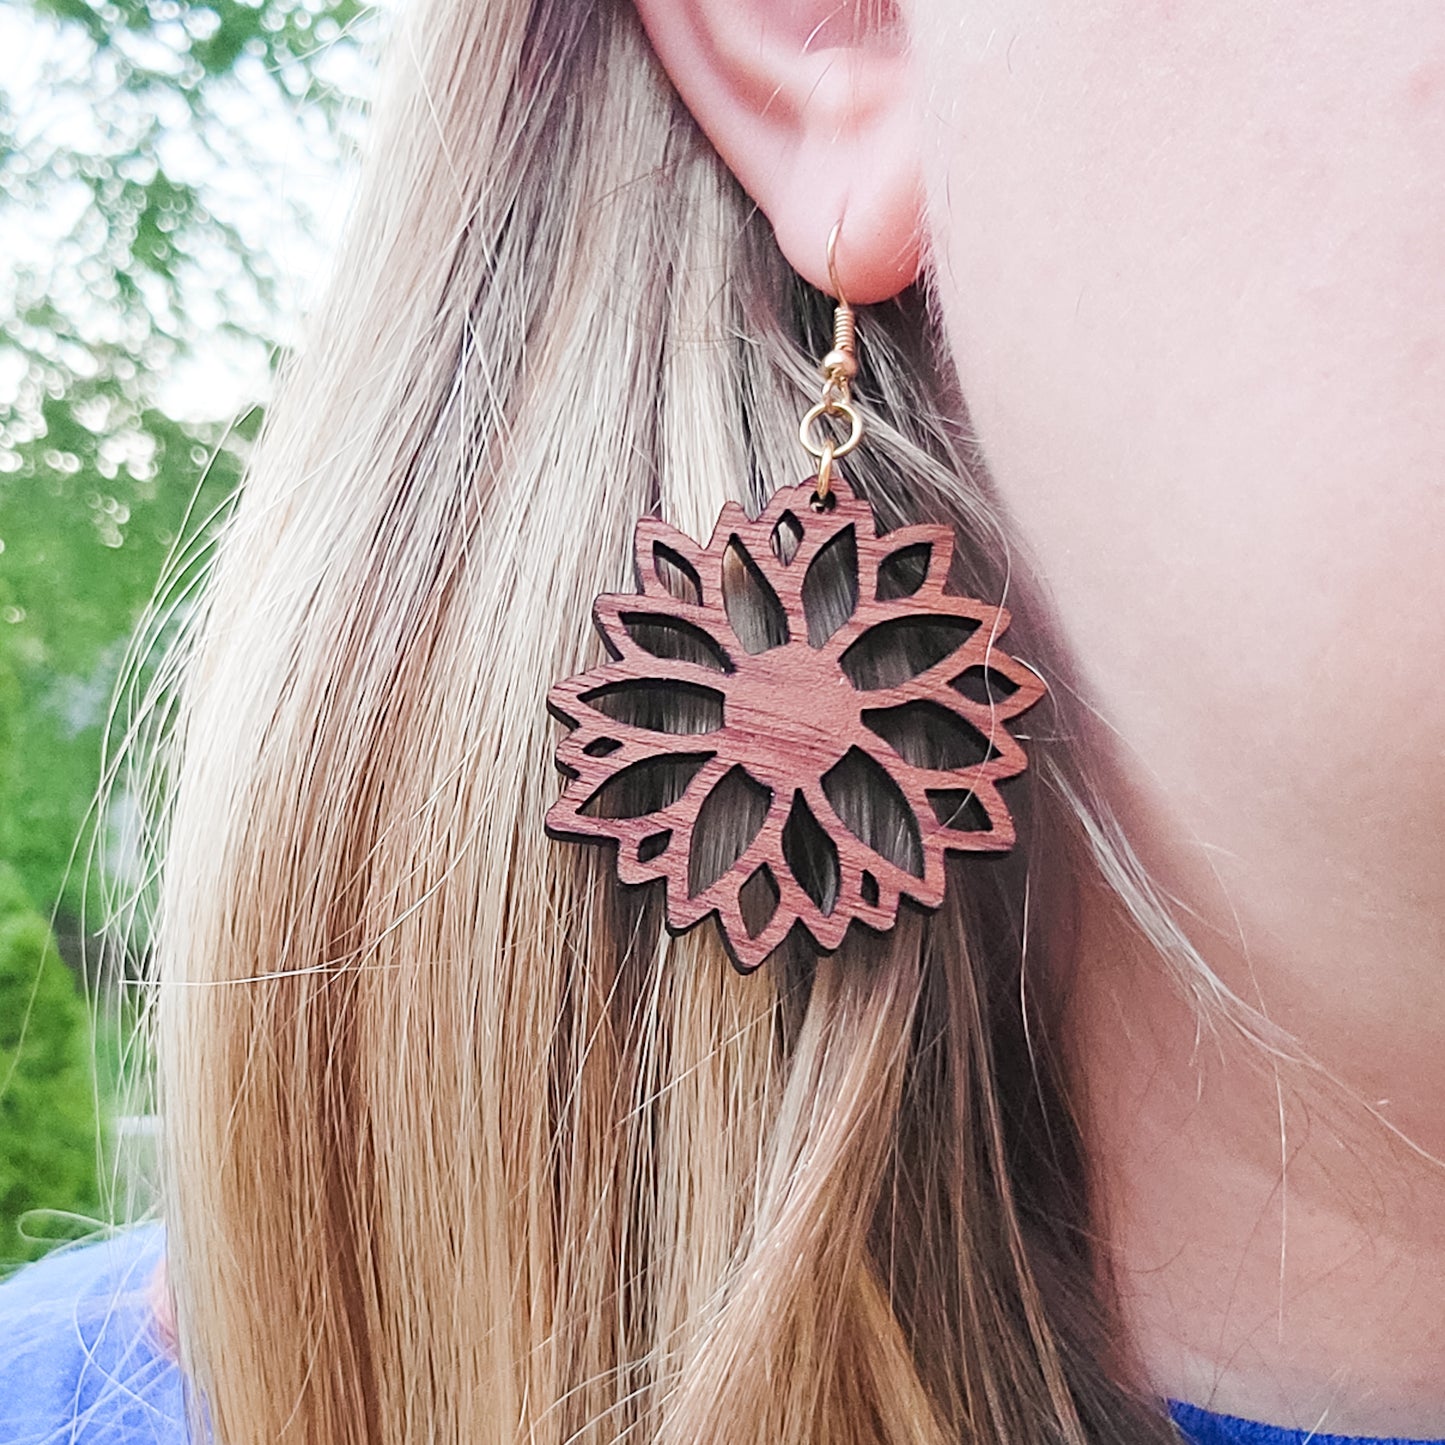 Intricate Sunflower Wooden Dangle Earrings